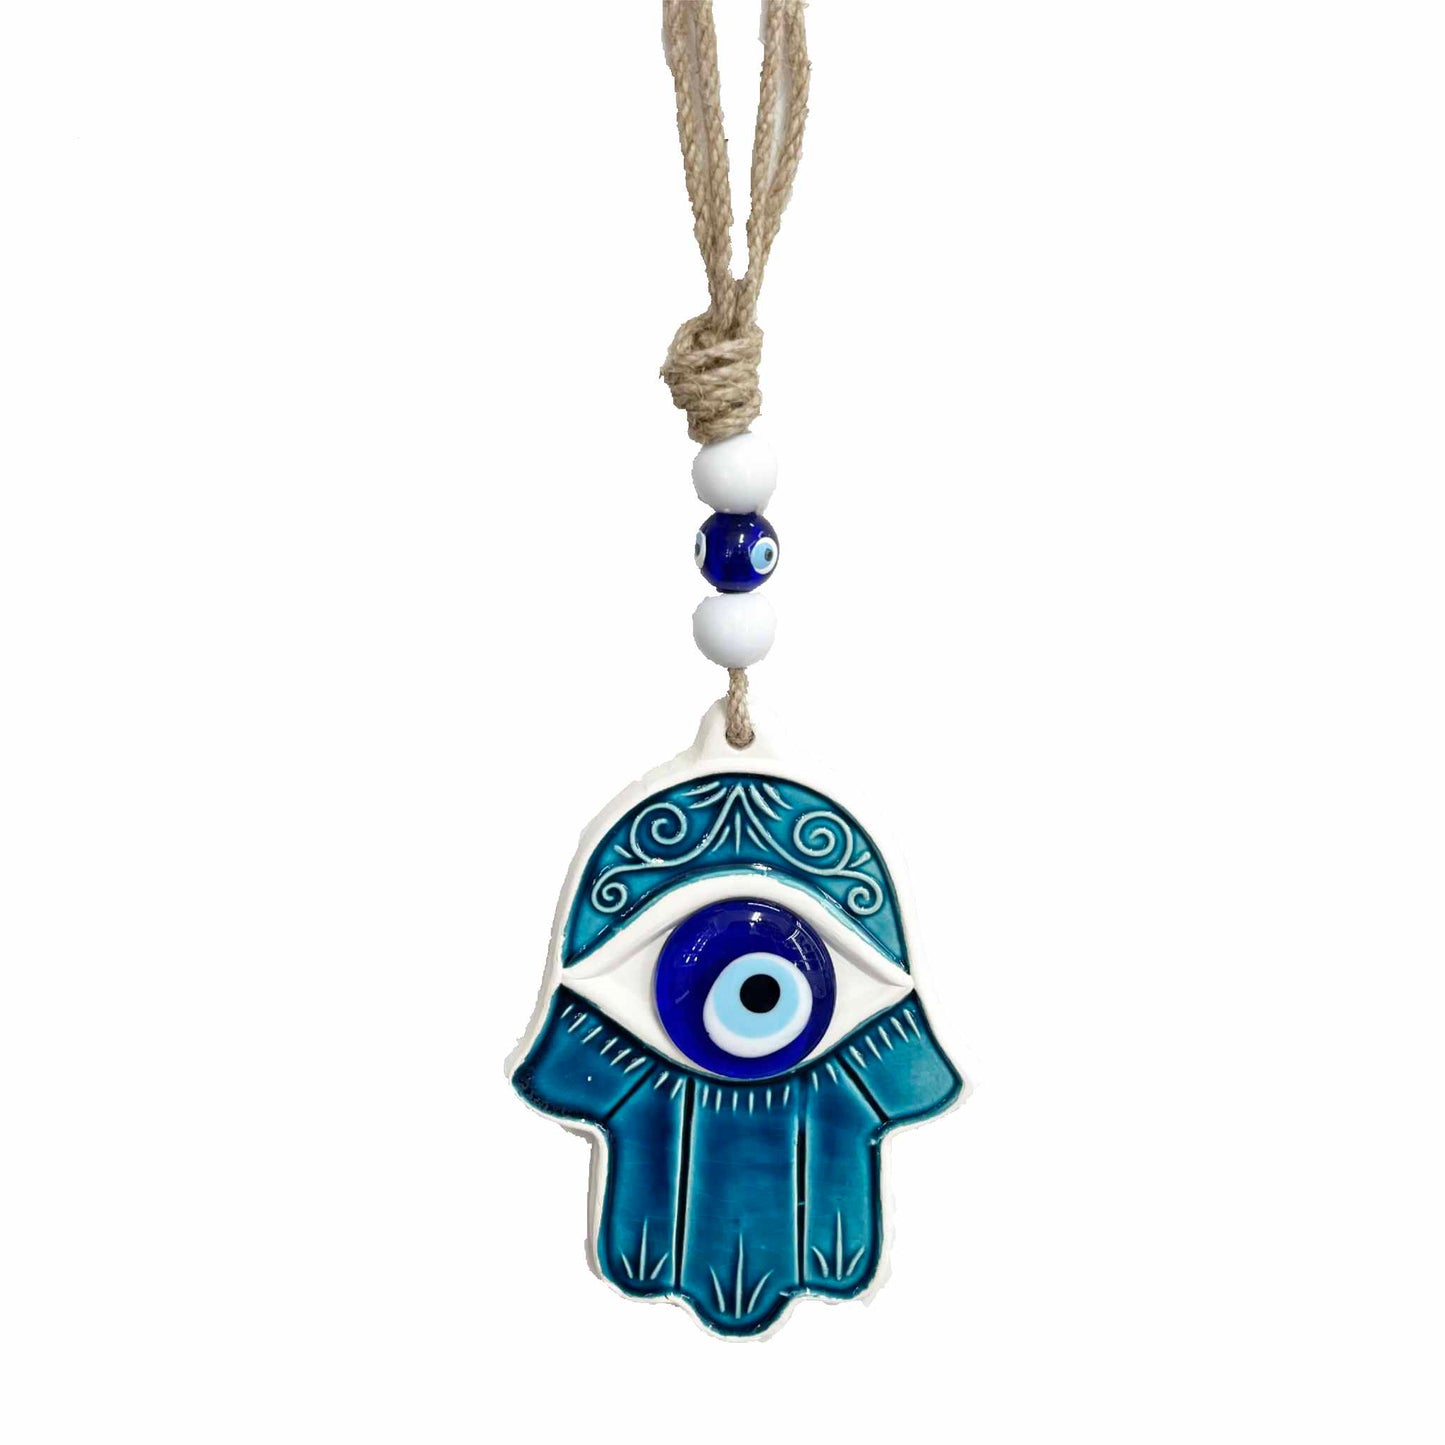 Amuleto ojo turco en mano de Fátima de pared en azul y blanco.